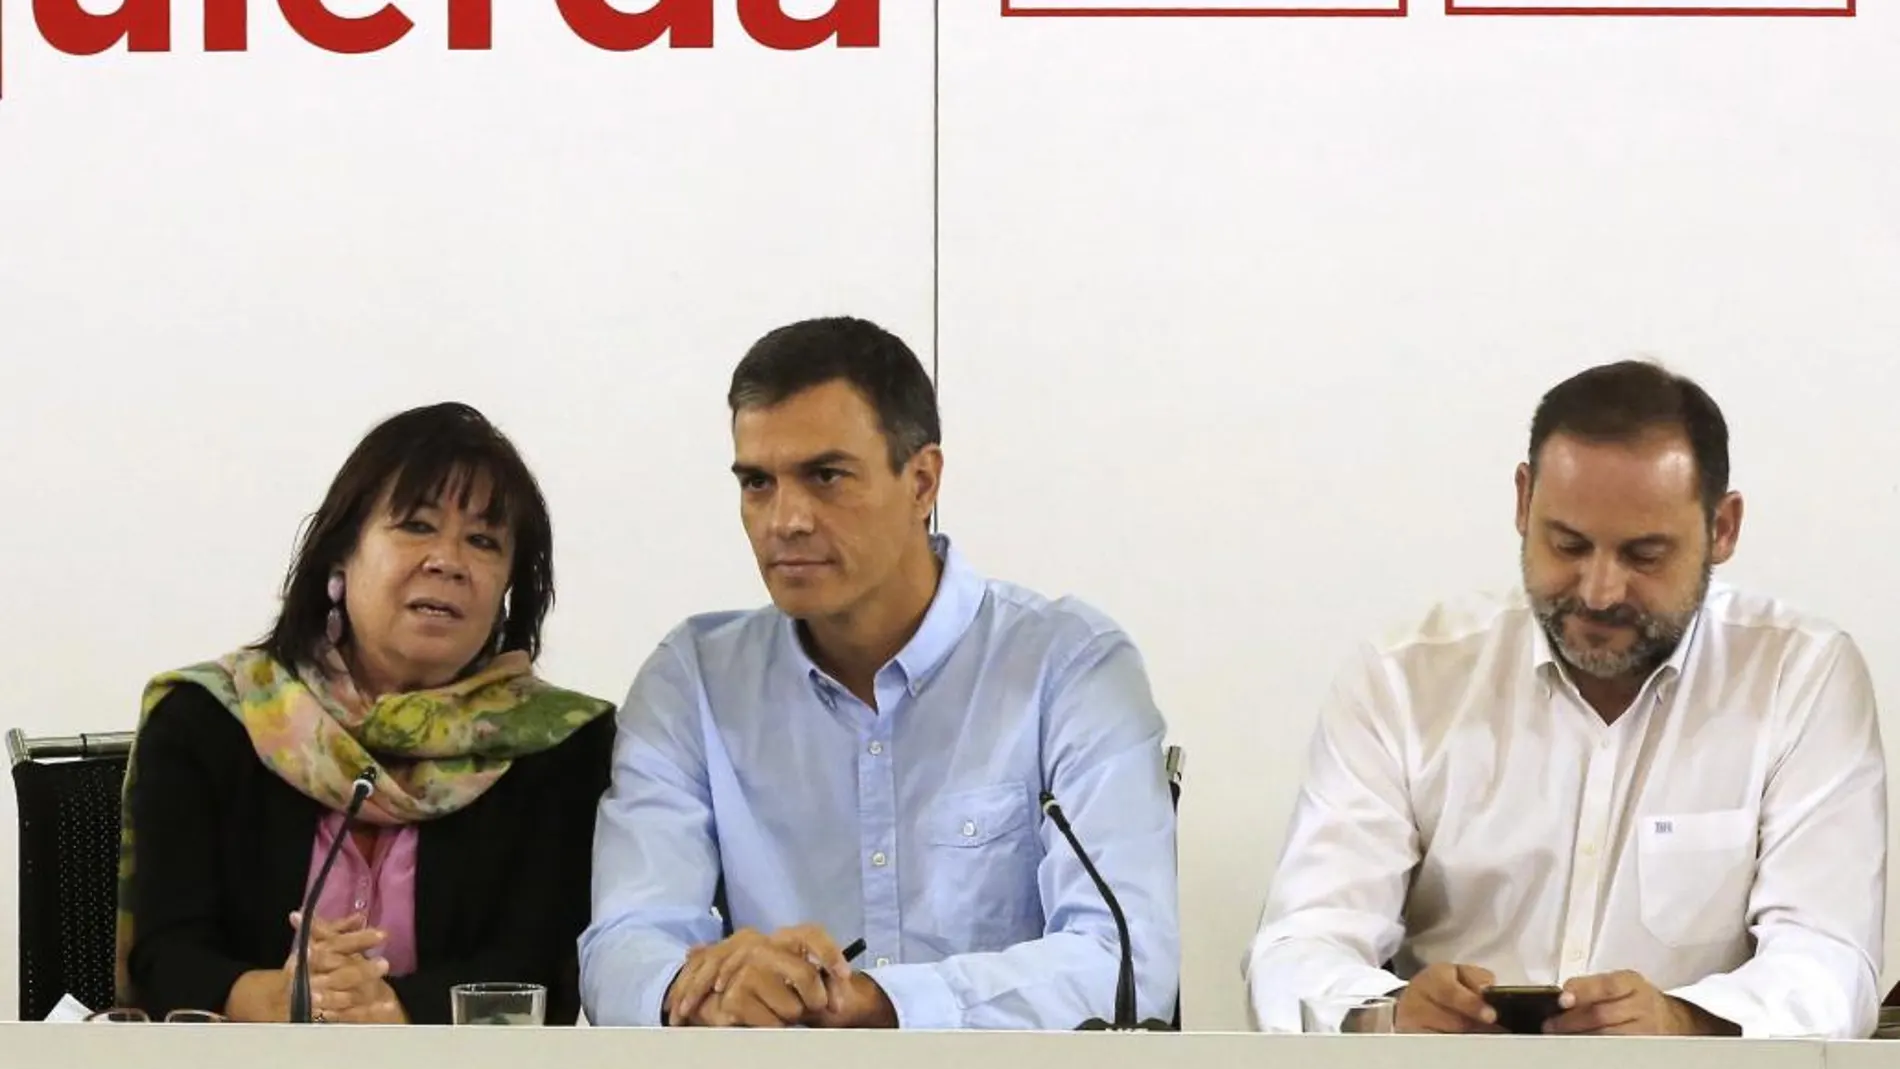 El secretario general del PSOE, Pedro Sánchez (c), junto a la presidenta del partido, Cristina Narbona (i), y el secretario de área de Organización, José Luis Ábalos